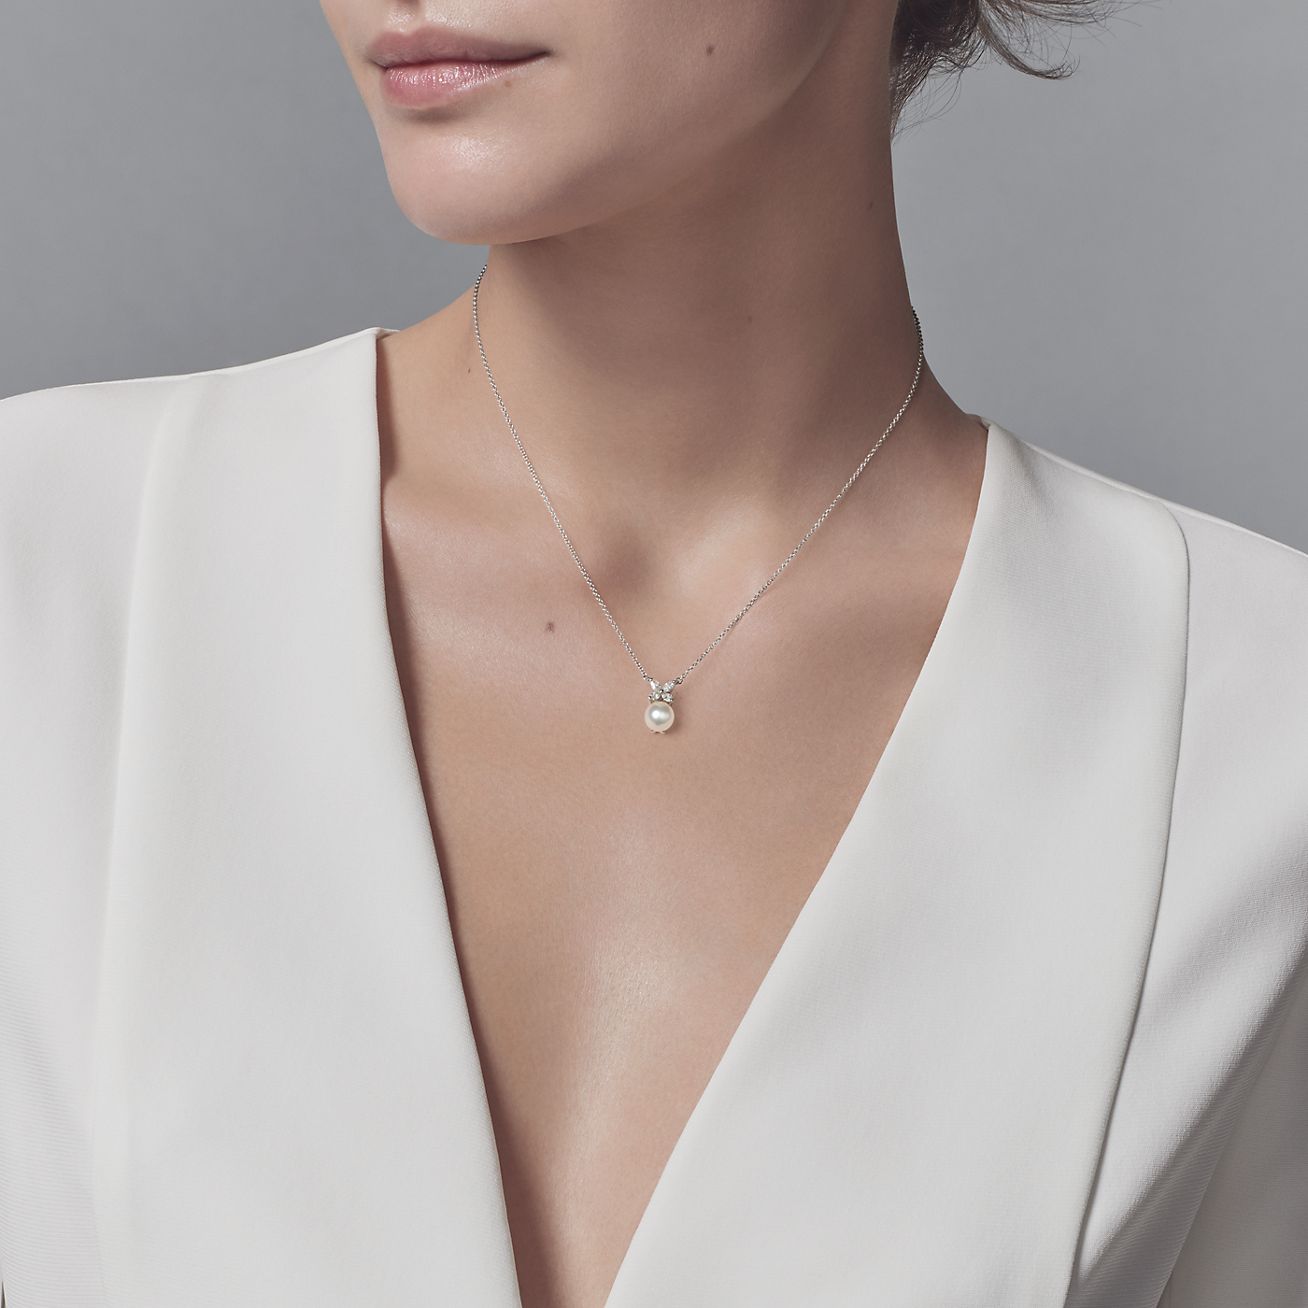 Tiffany Victoria® pendant in platinum 